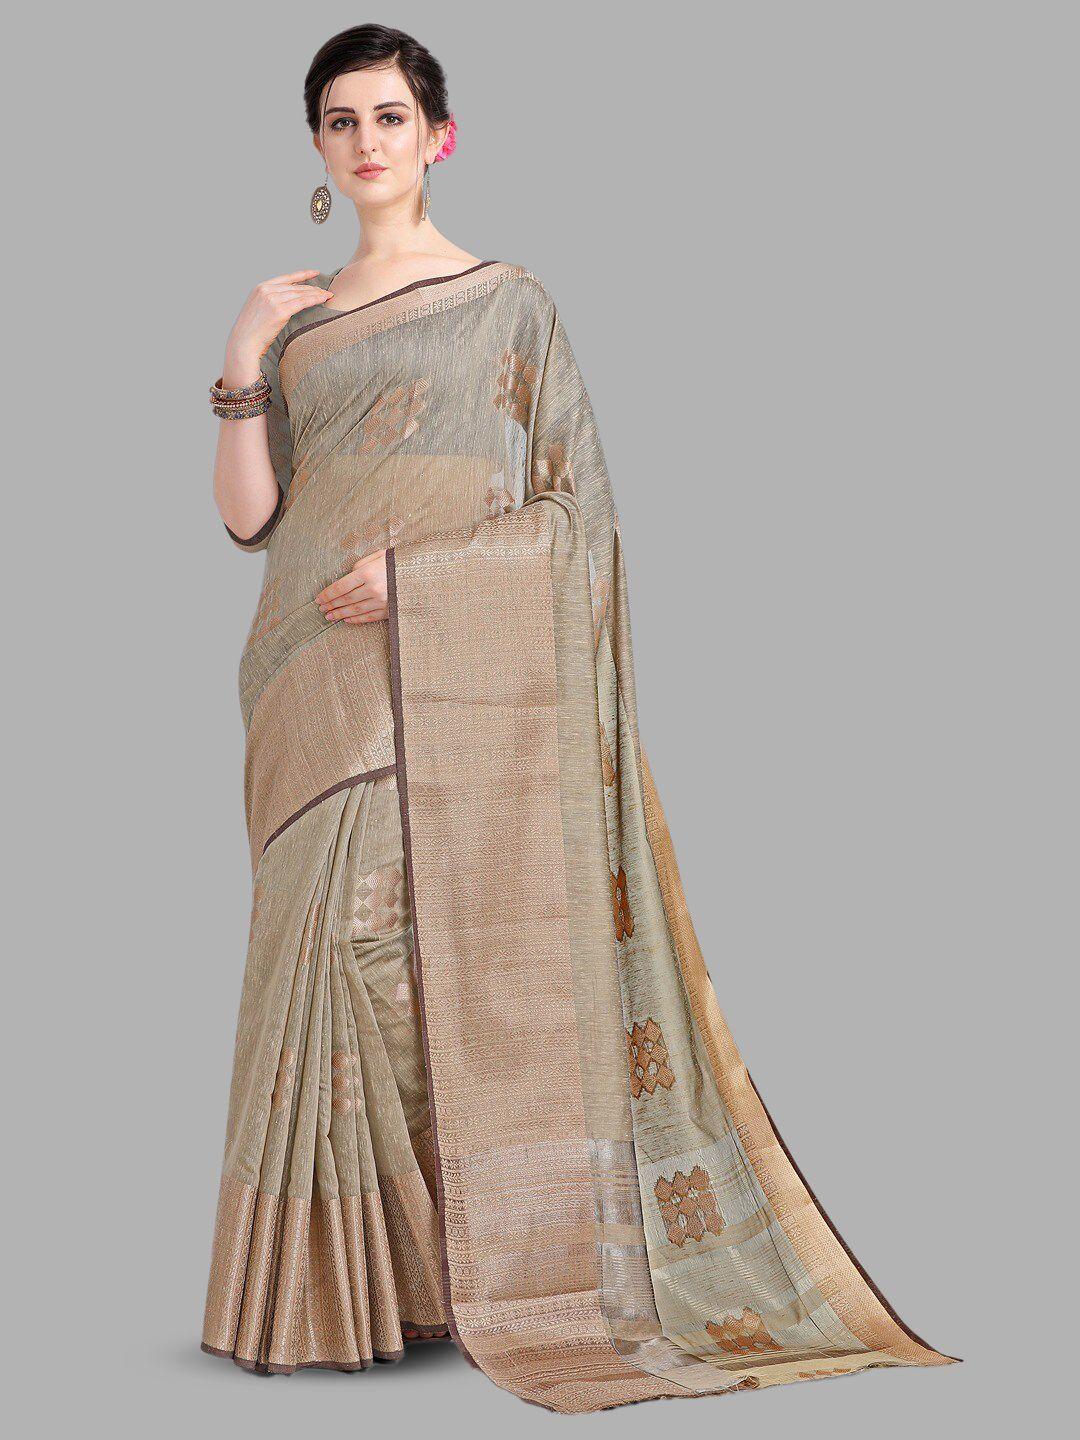 insthah geometric woven design zari pure linen saree